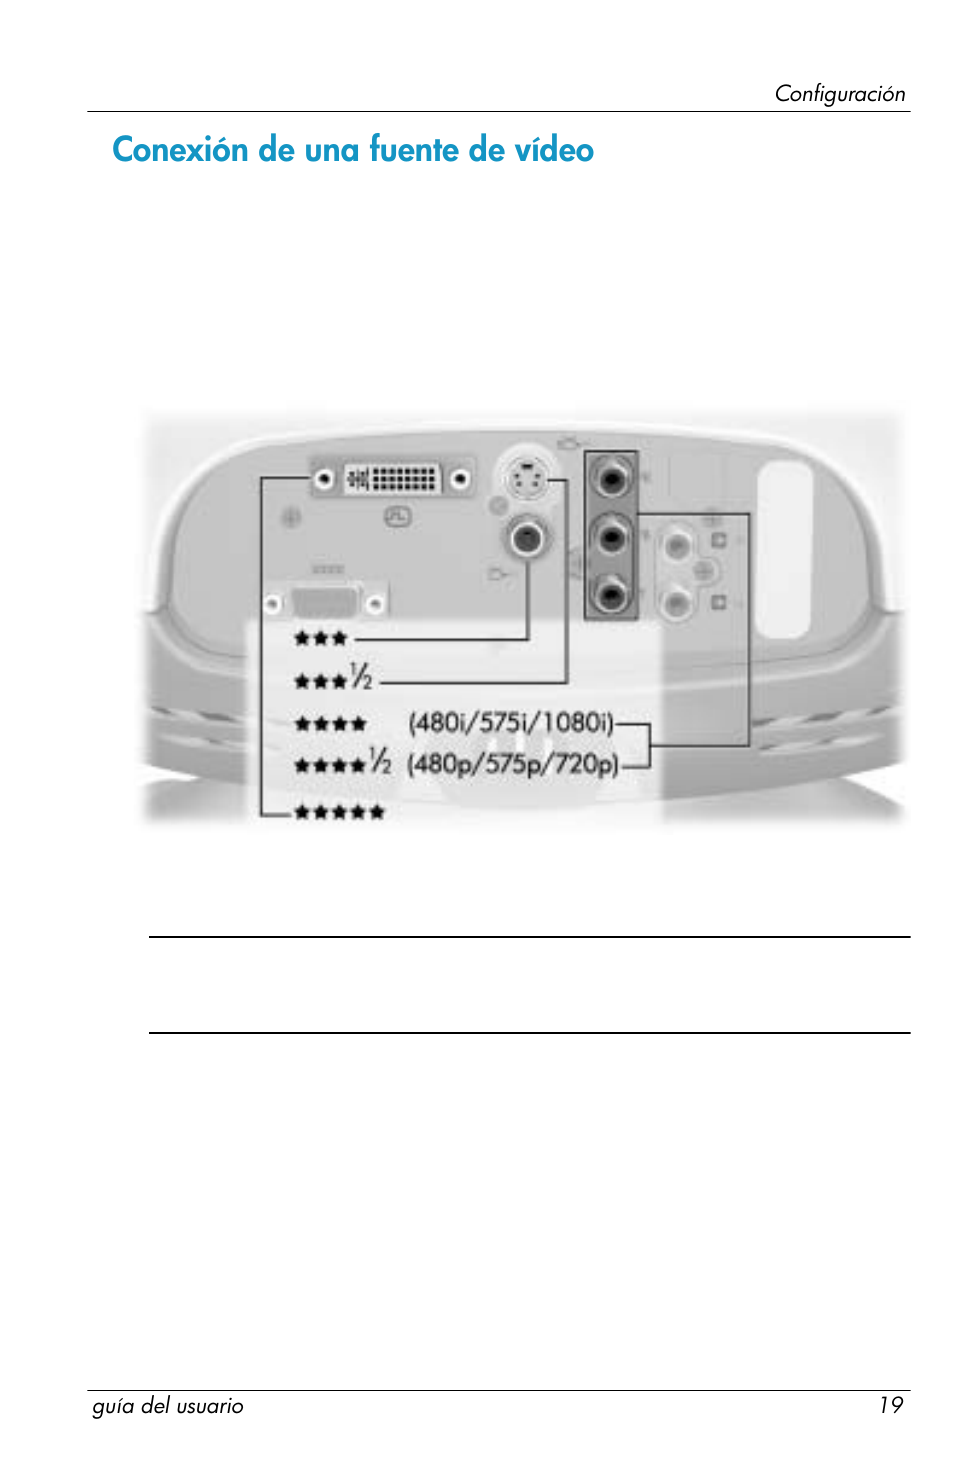 Conexión de una fuente de vídeo | HP ep7120 Digital Projector Manual del usuario | Página 19 / 82